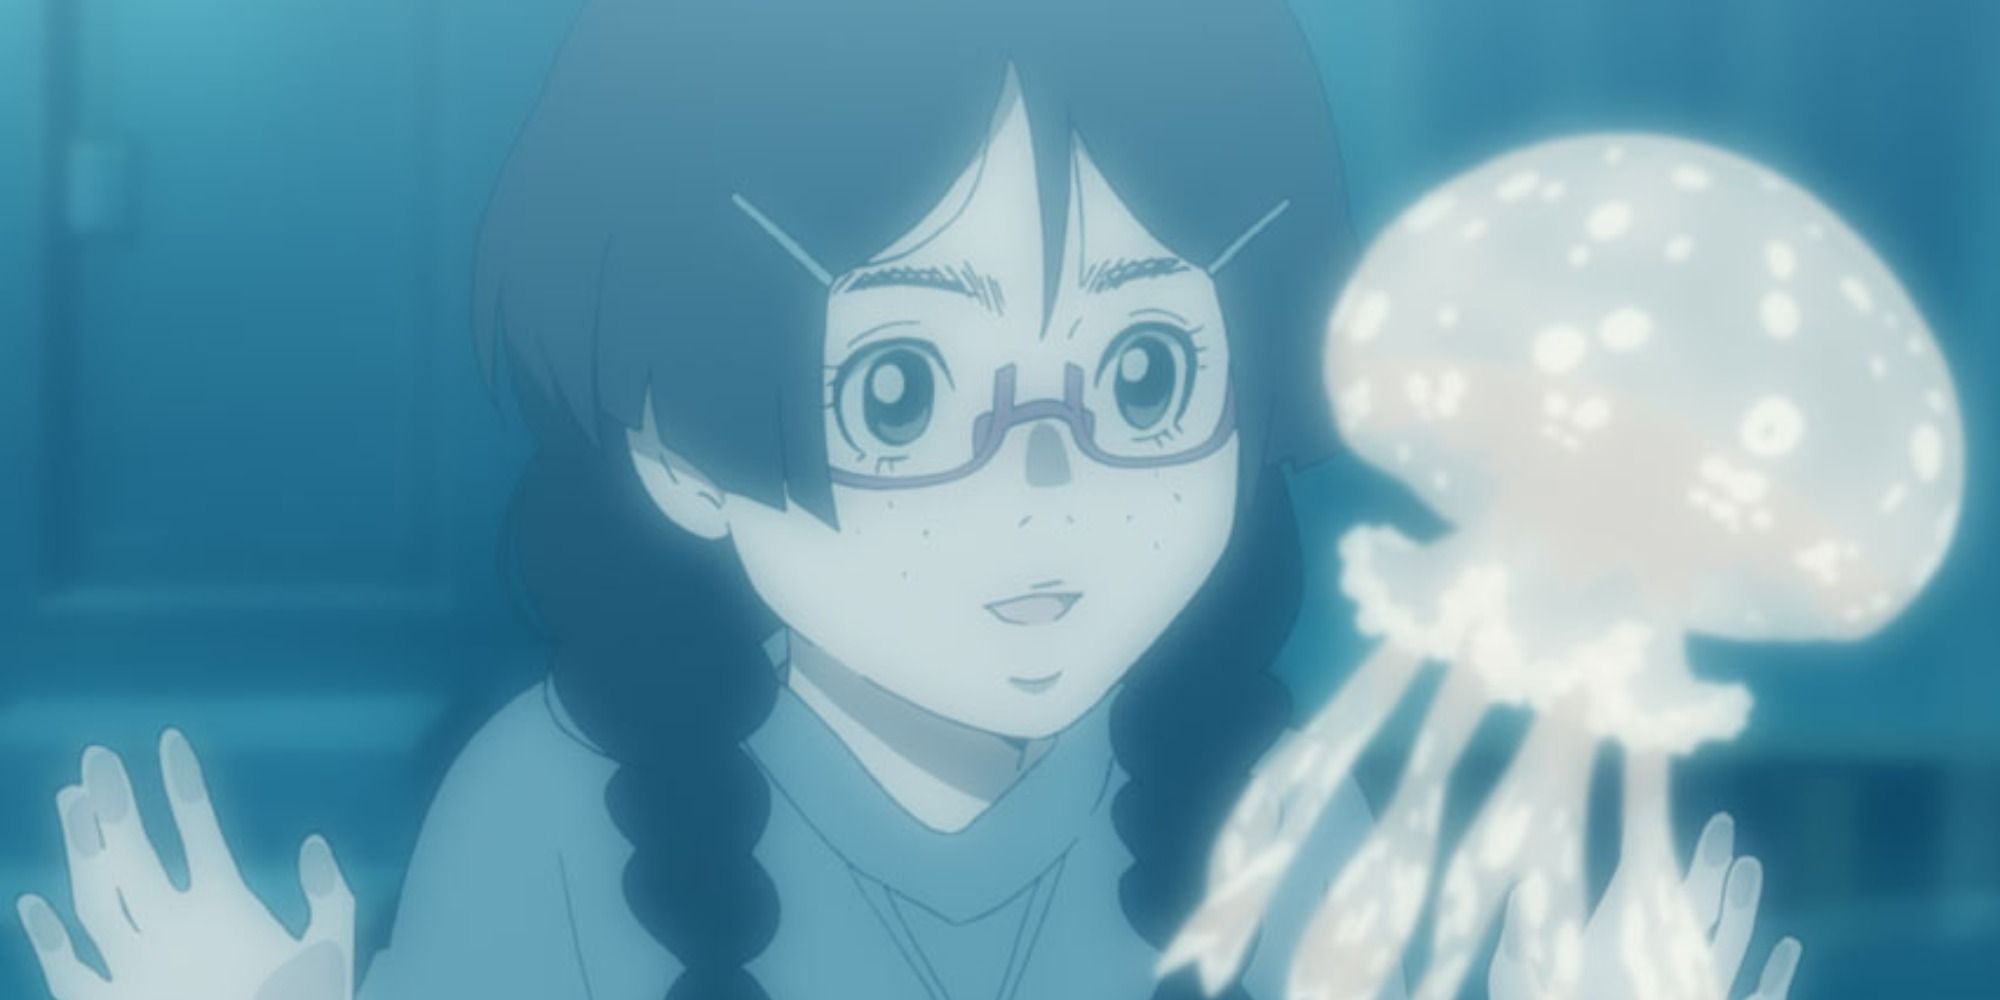 Tsukimi visits Clara, her jellyfish friend